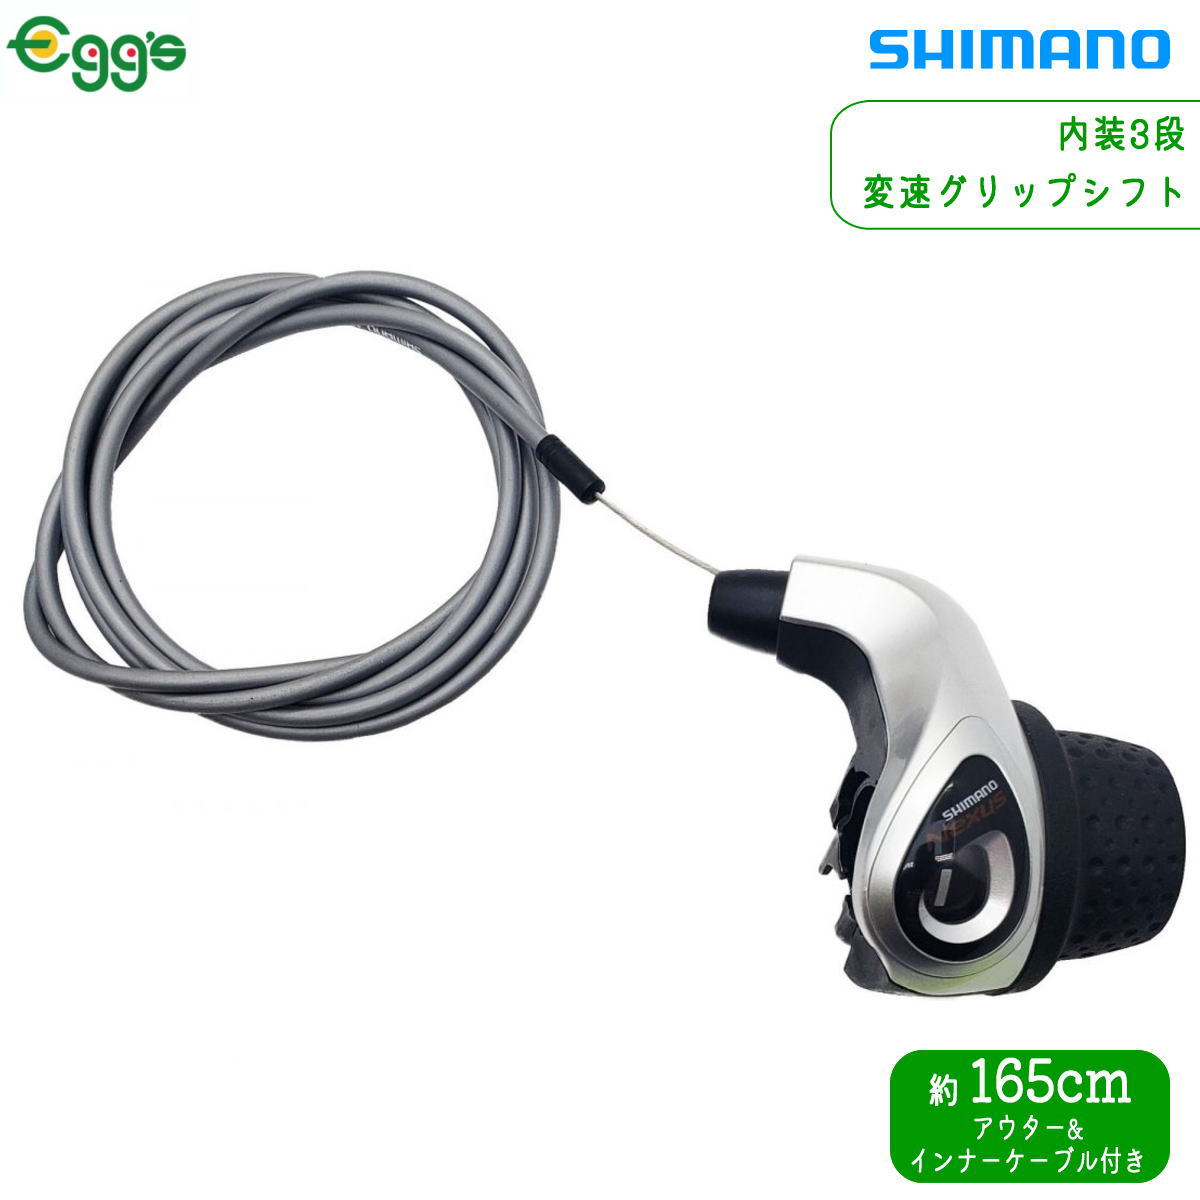 SHIMANO シマノ EW-SD300 350mm Eチューブ エレクトリックワイヤー E-Tube 外装用 自転車 ゆうパケット/ネコポス送料無料